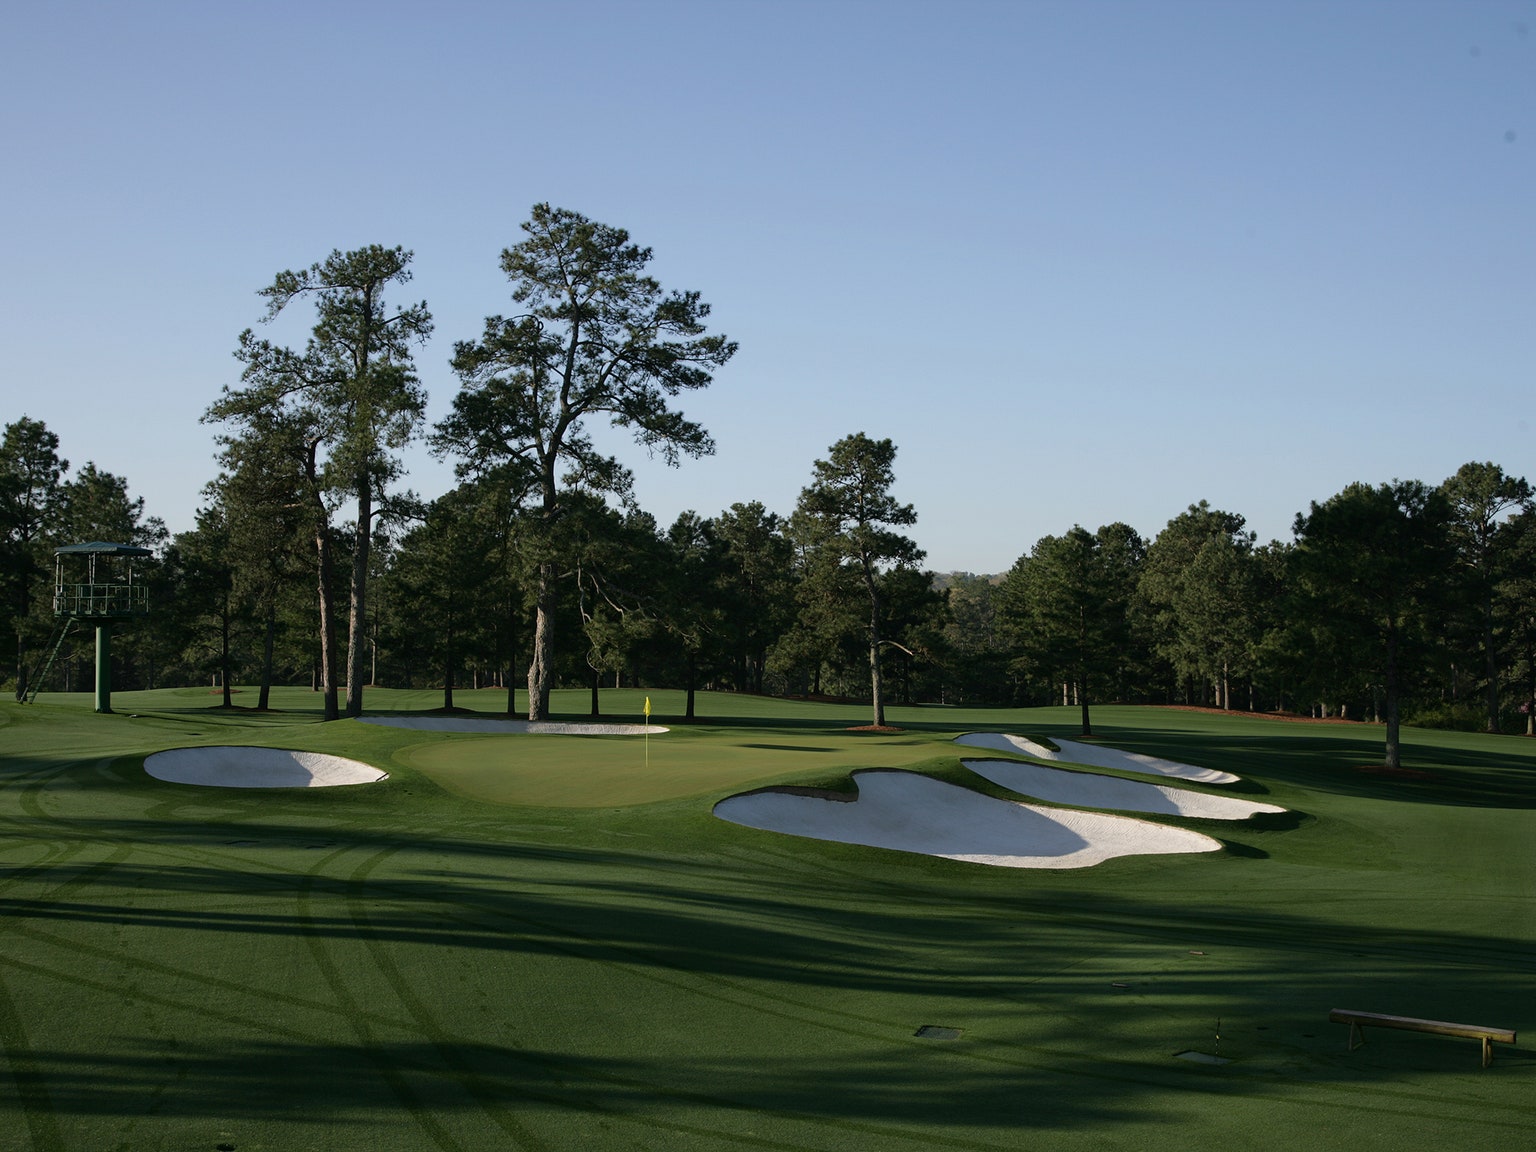 组图:高尔夫球场欣赏 美国奥古斯塔高尔夫俱乐部